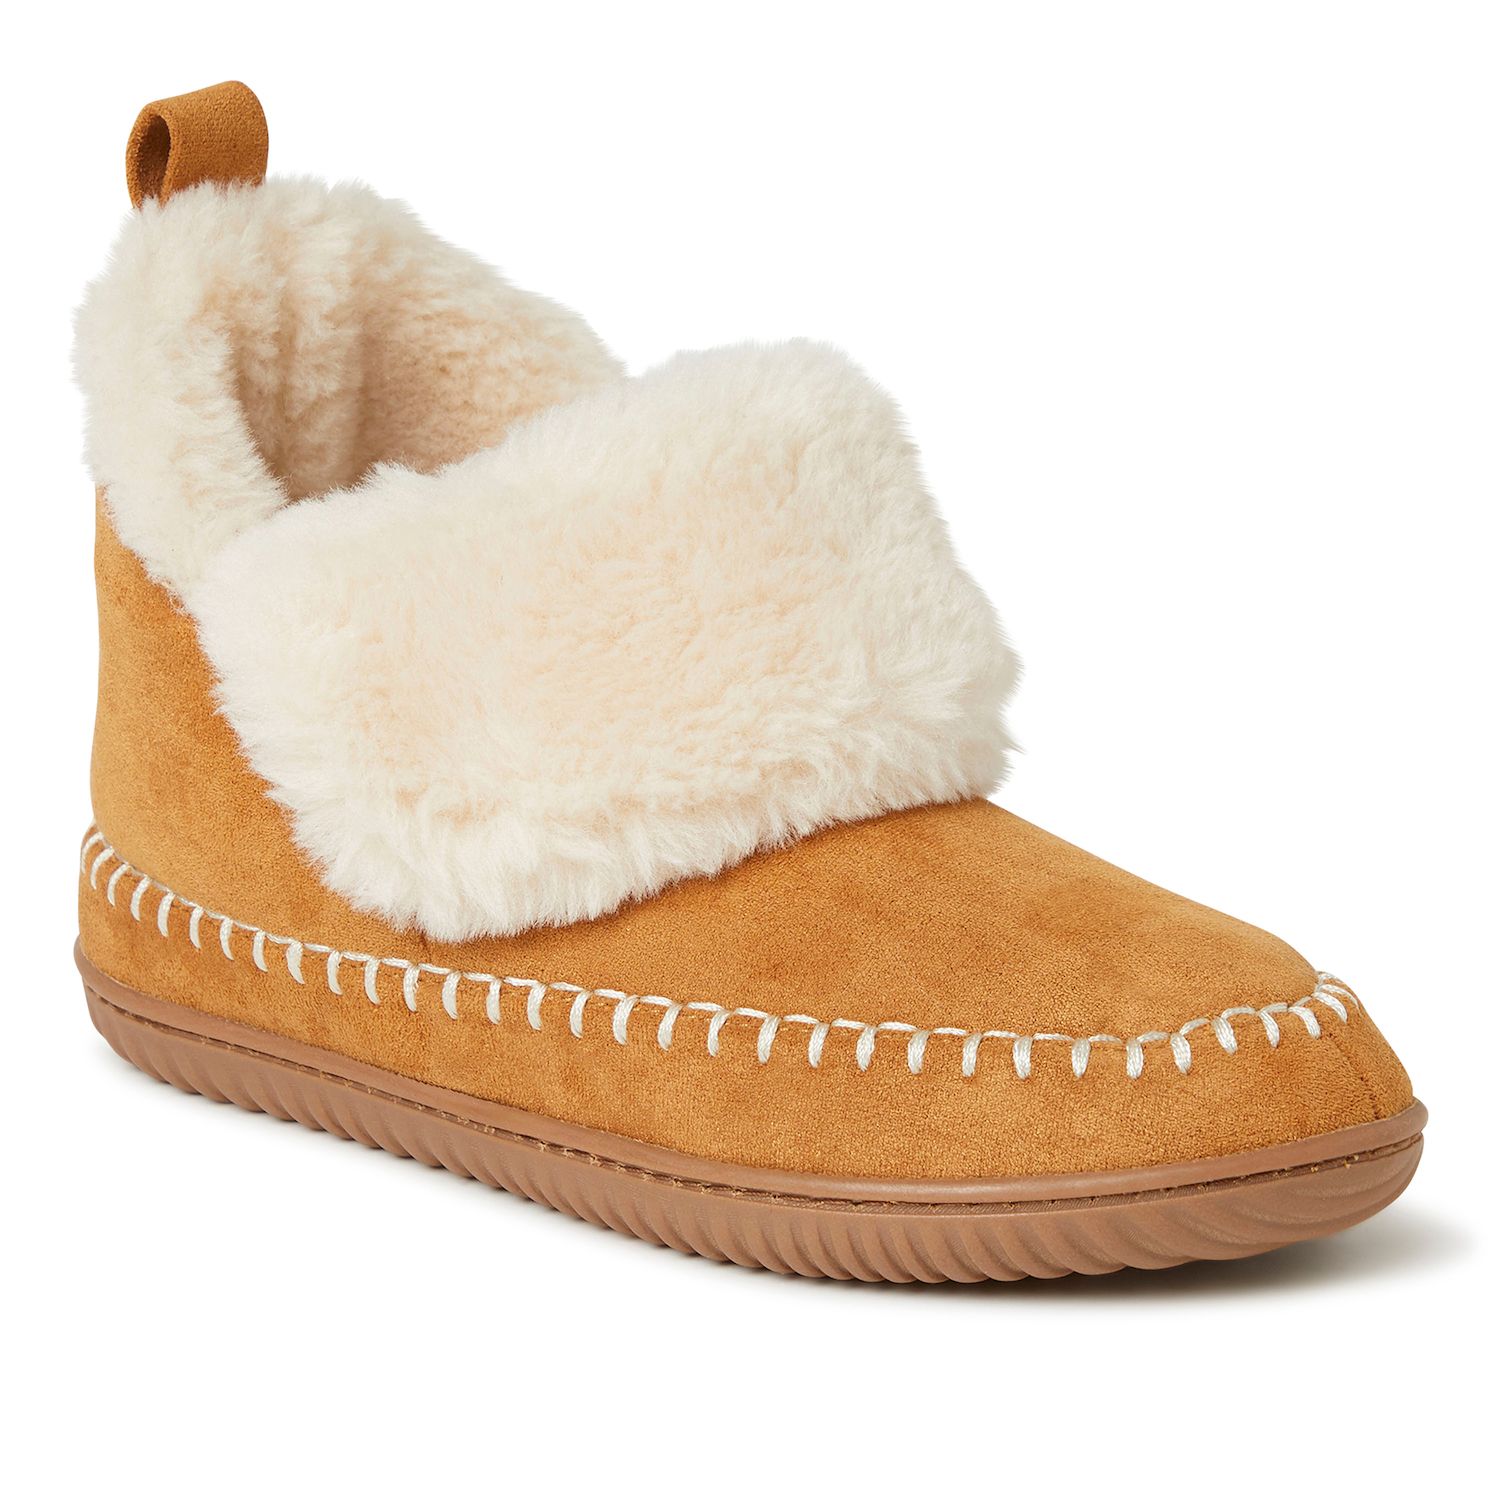 women's dearfoam moccasin slippers